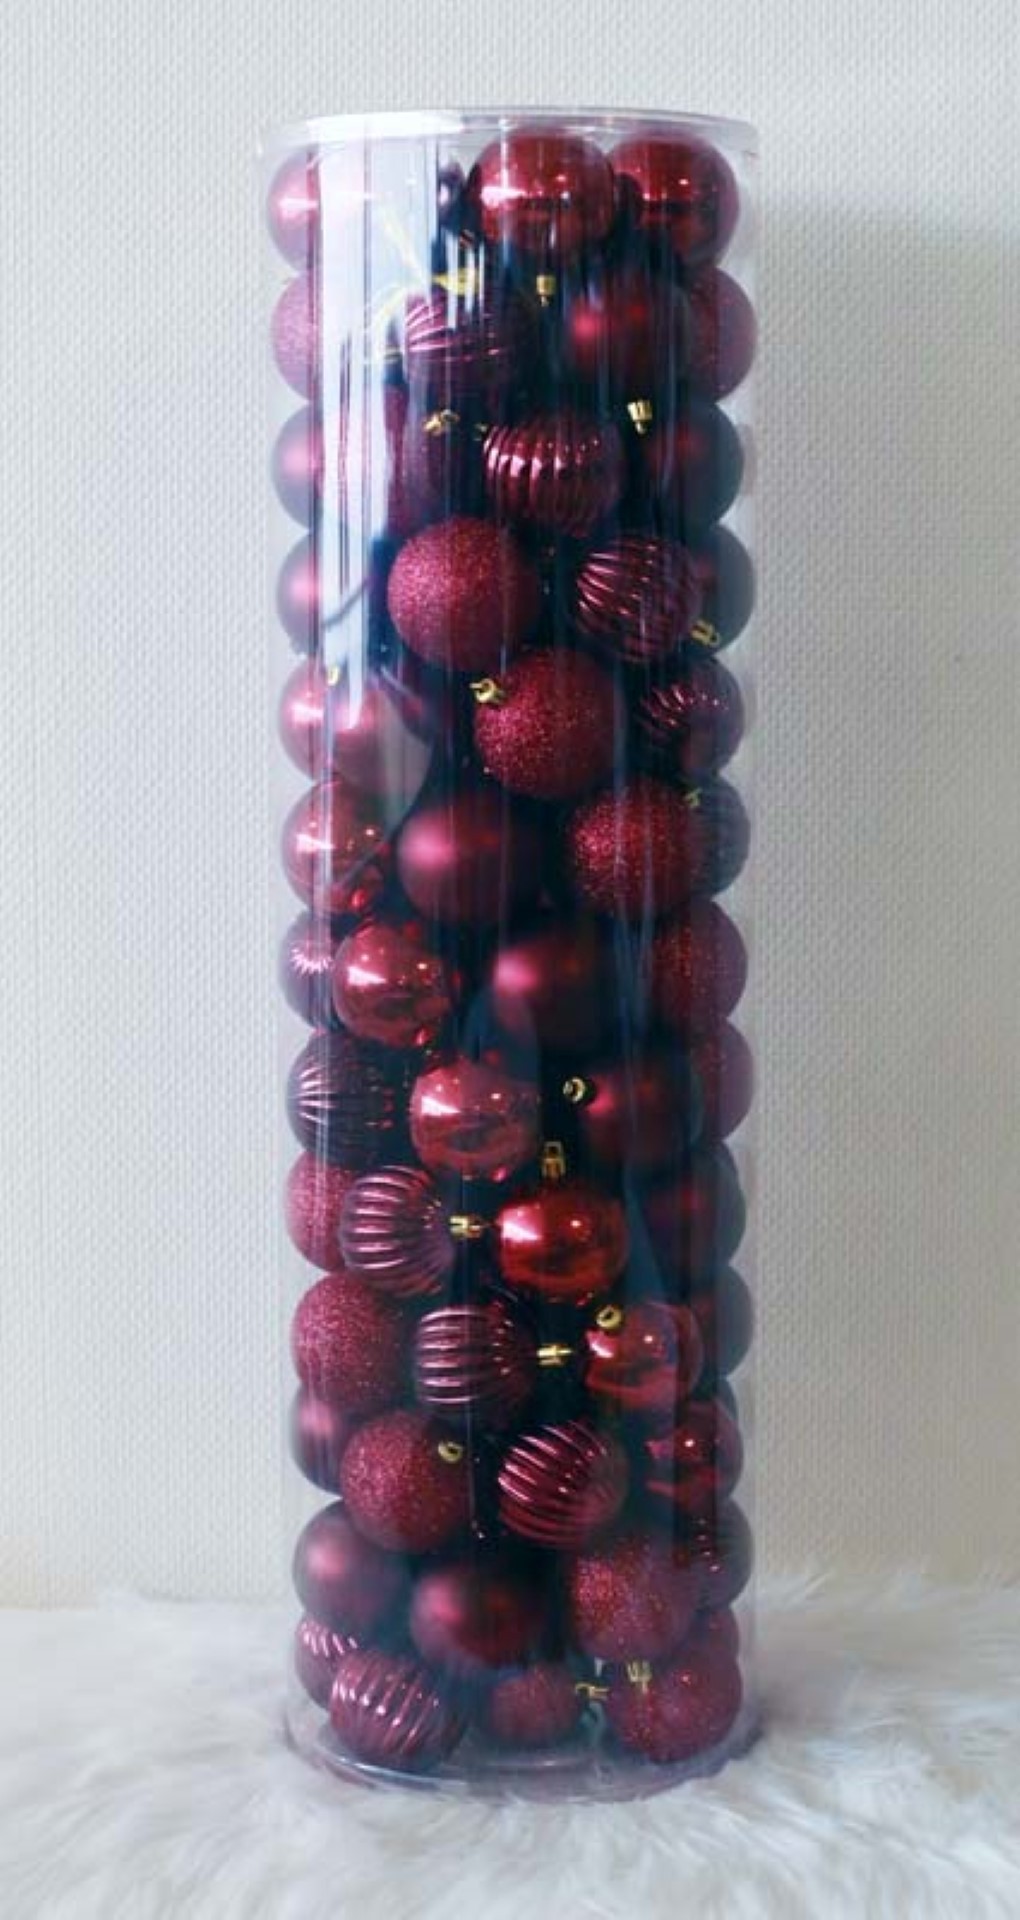 100 Onbreekbare kerstballen in koker diameter 6 cm bordeauxrood watermeloen - Oosterik Home